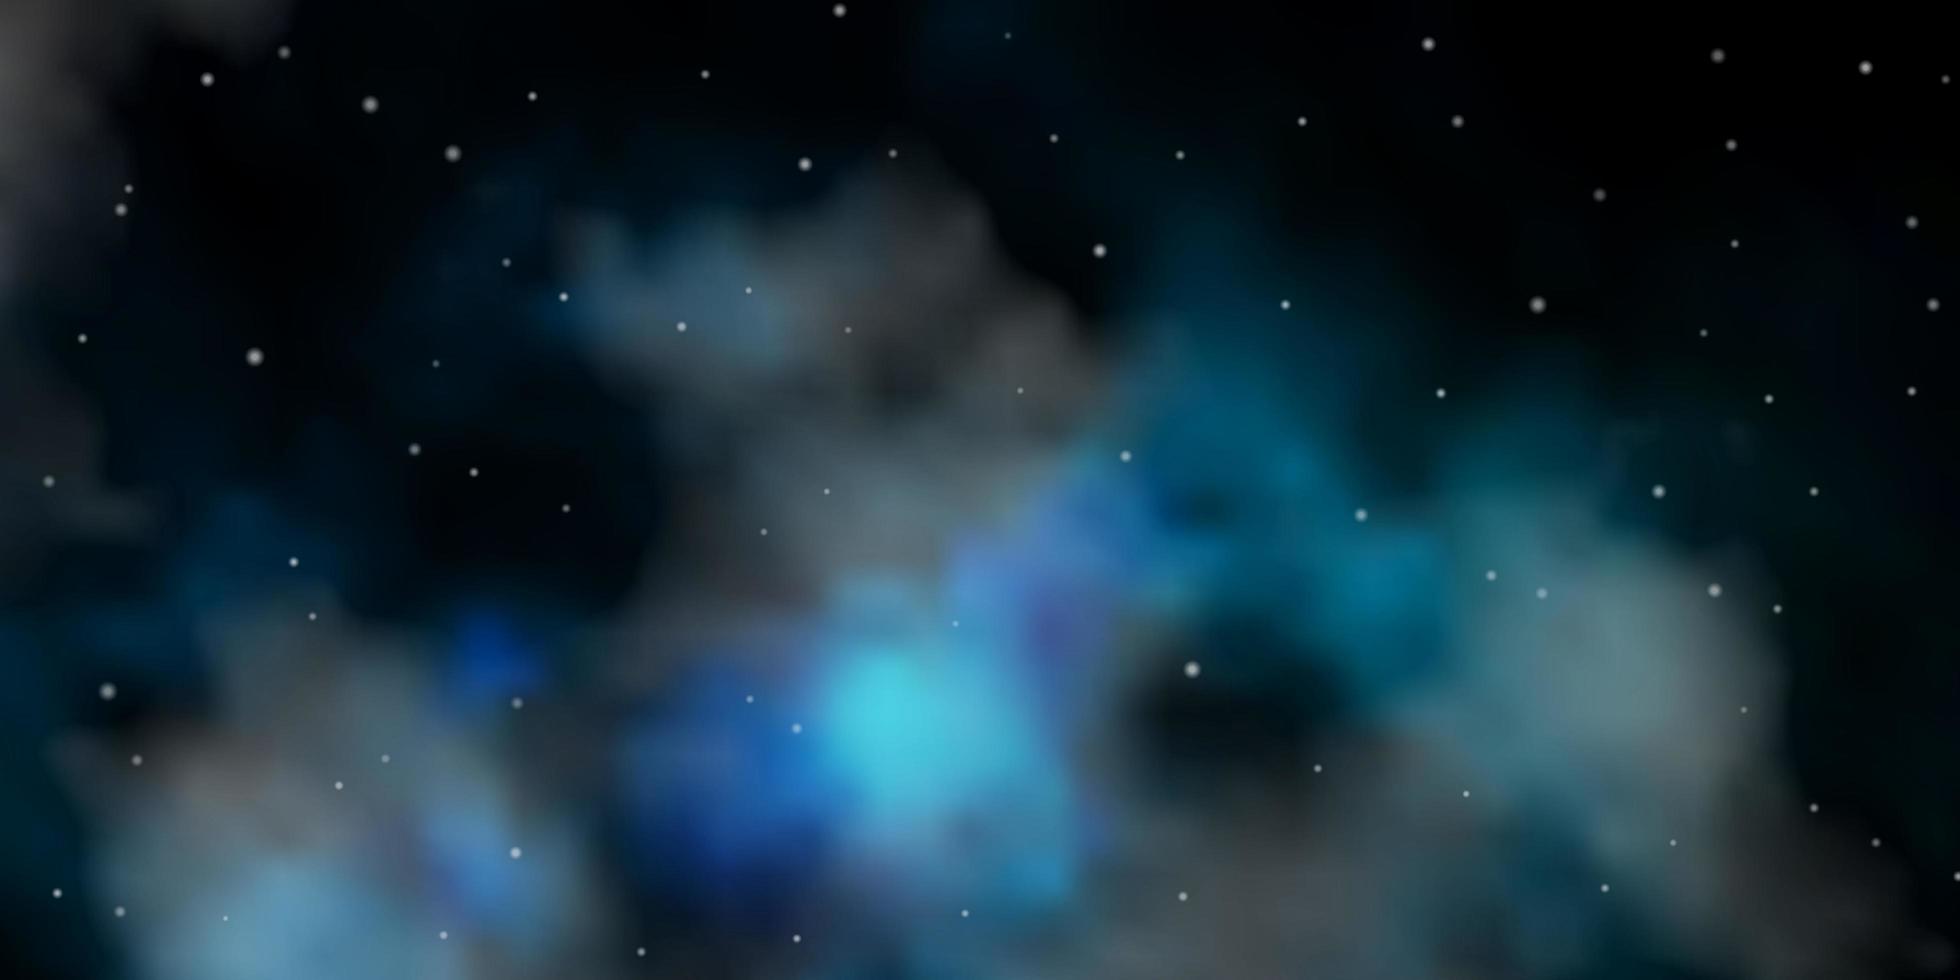 sfondo vettoriale blu scuro con stelle piccole e grandi illustrazione astratta geometrica moderna con motivo a stelle per incartare regali